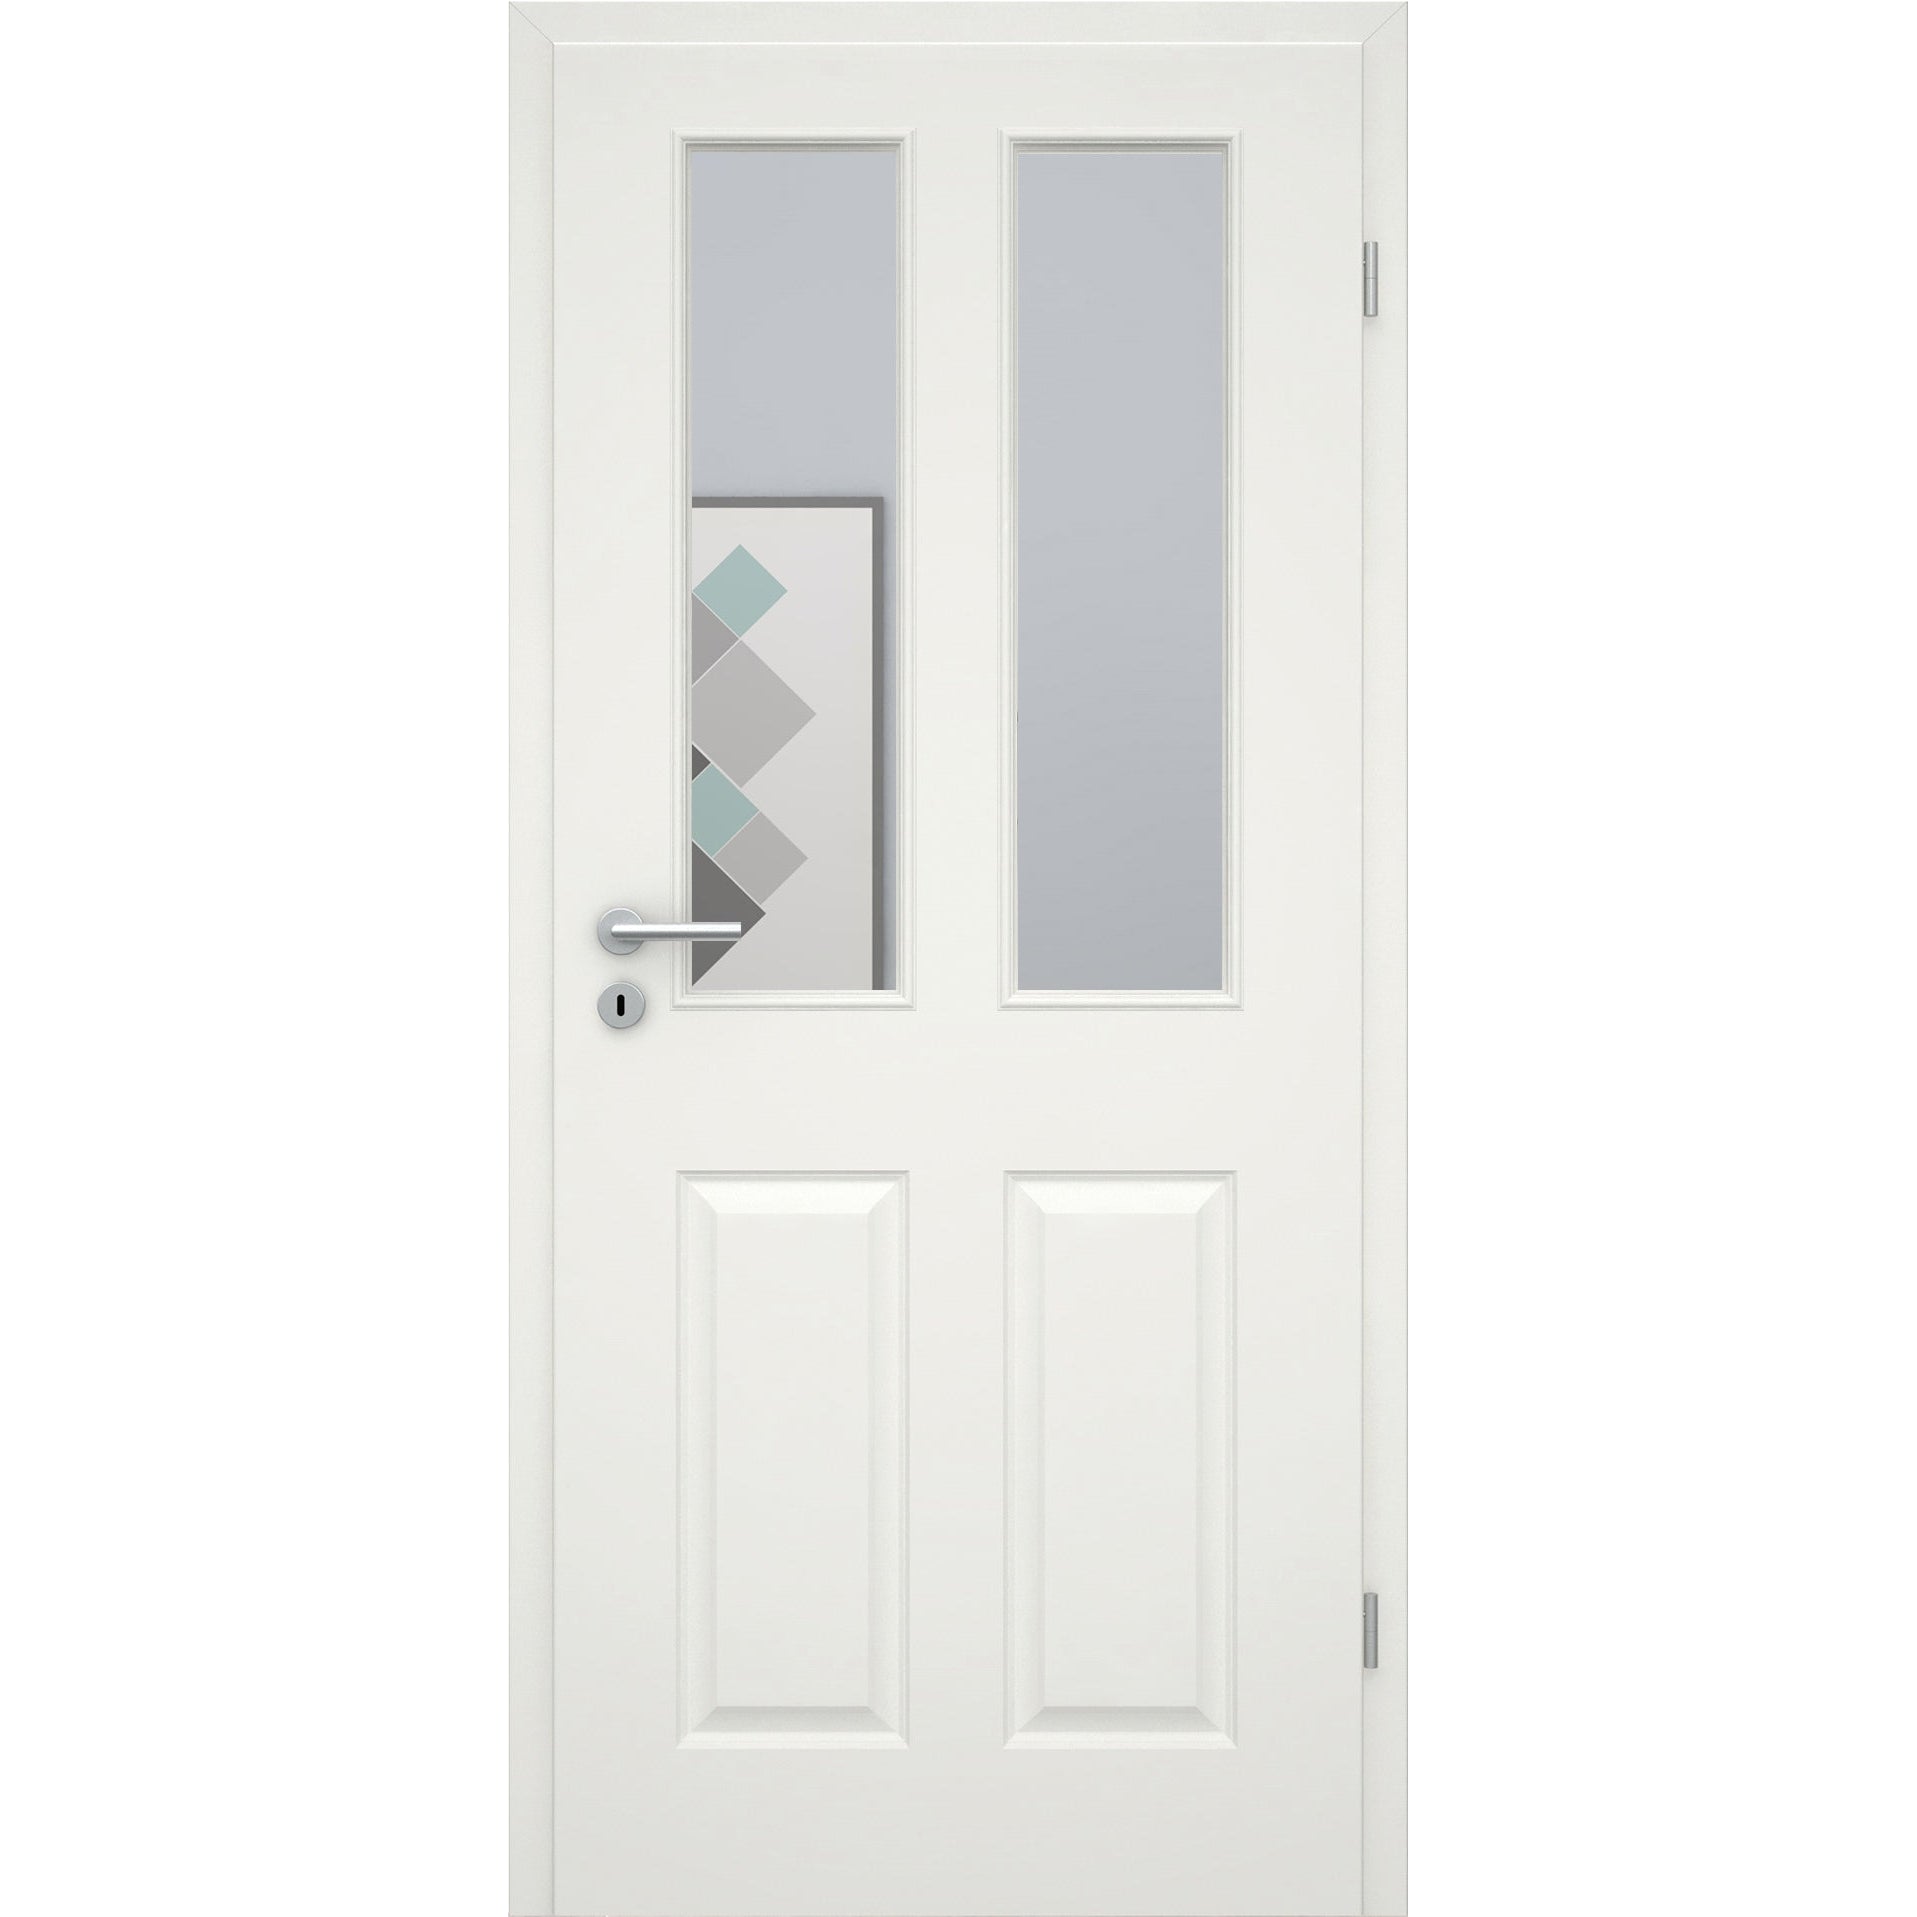 Zimmertür soft-weiß Stiltür mit 4 Kassetten und Lichtausschnitt Rundkante - Modell Stiltür K41LA2